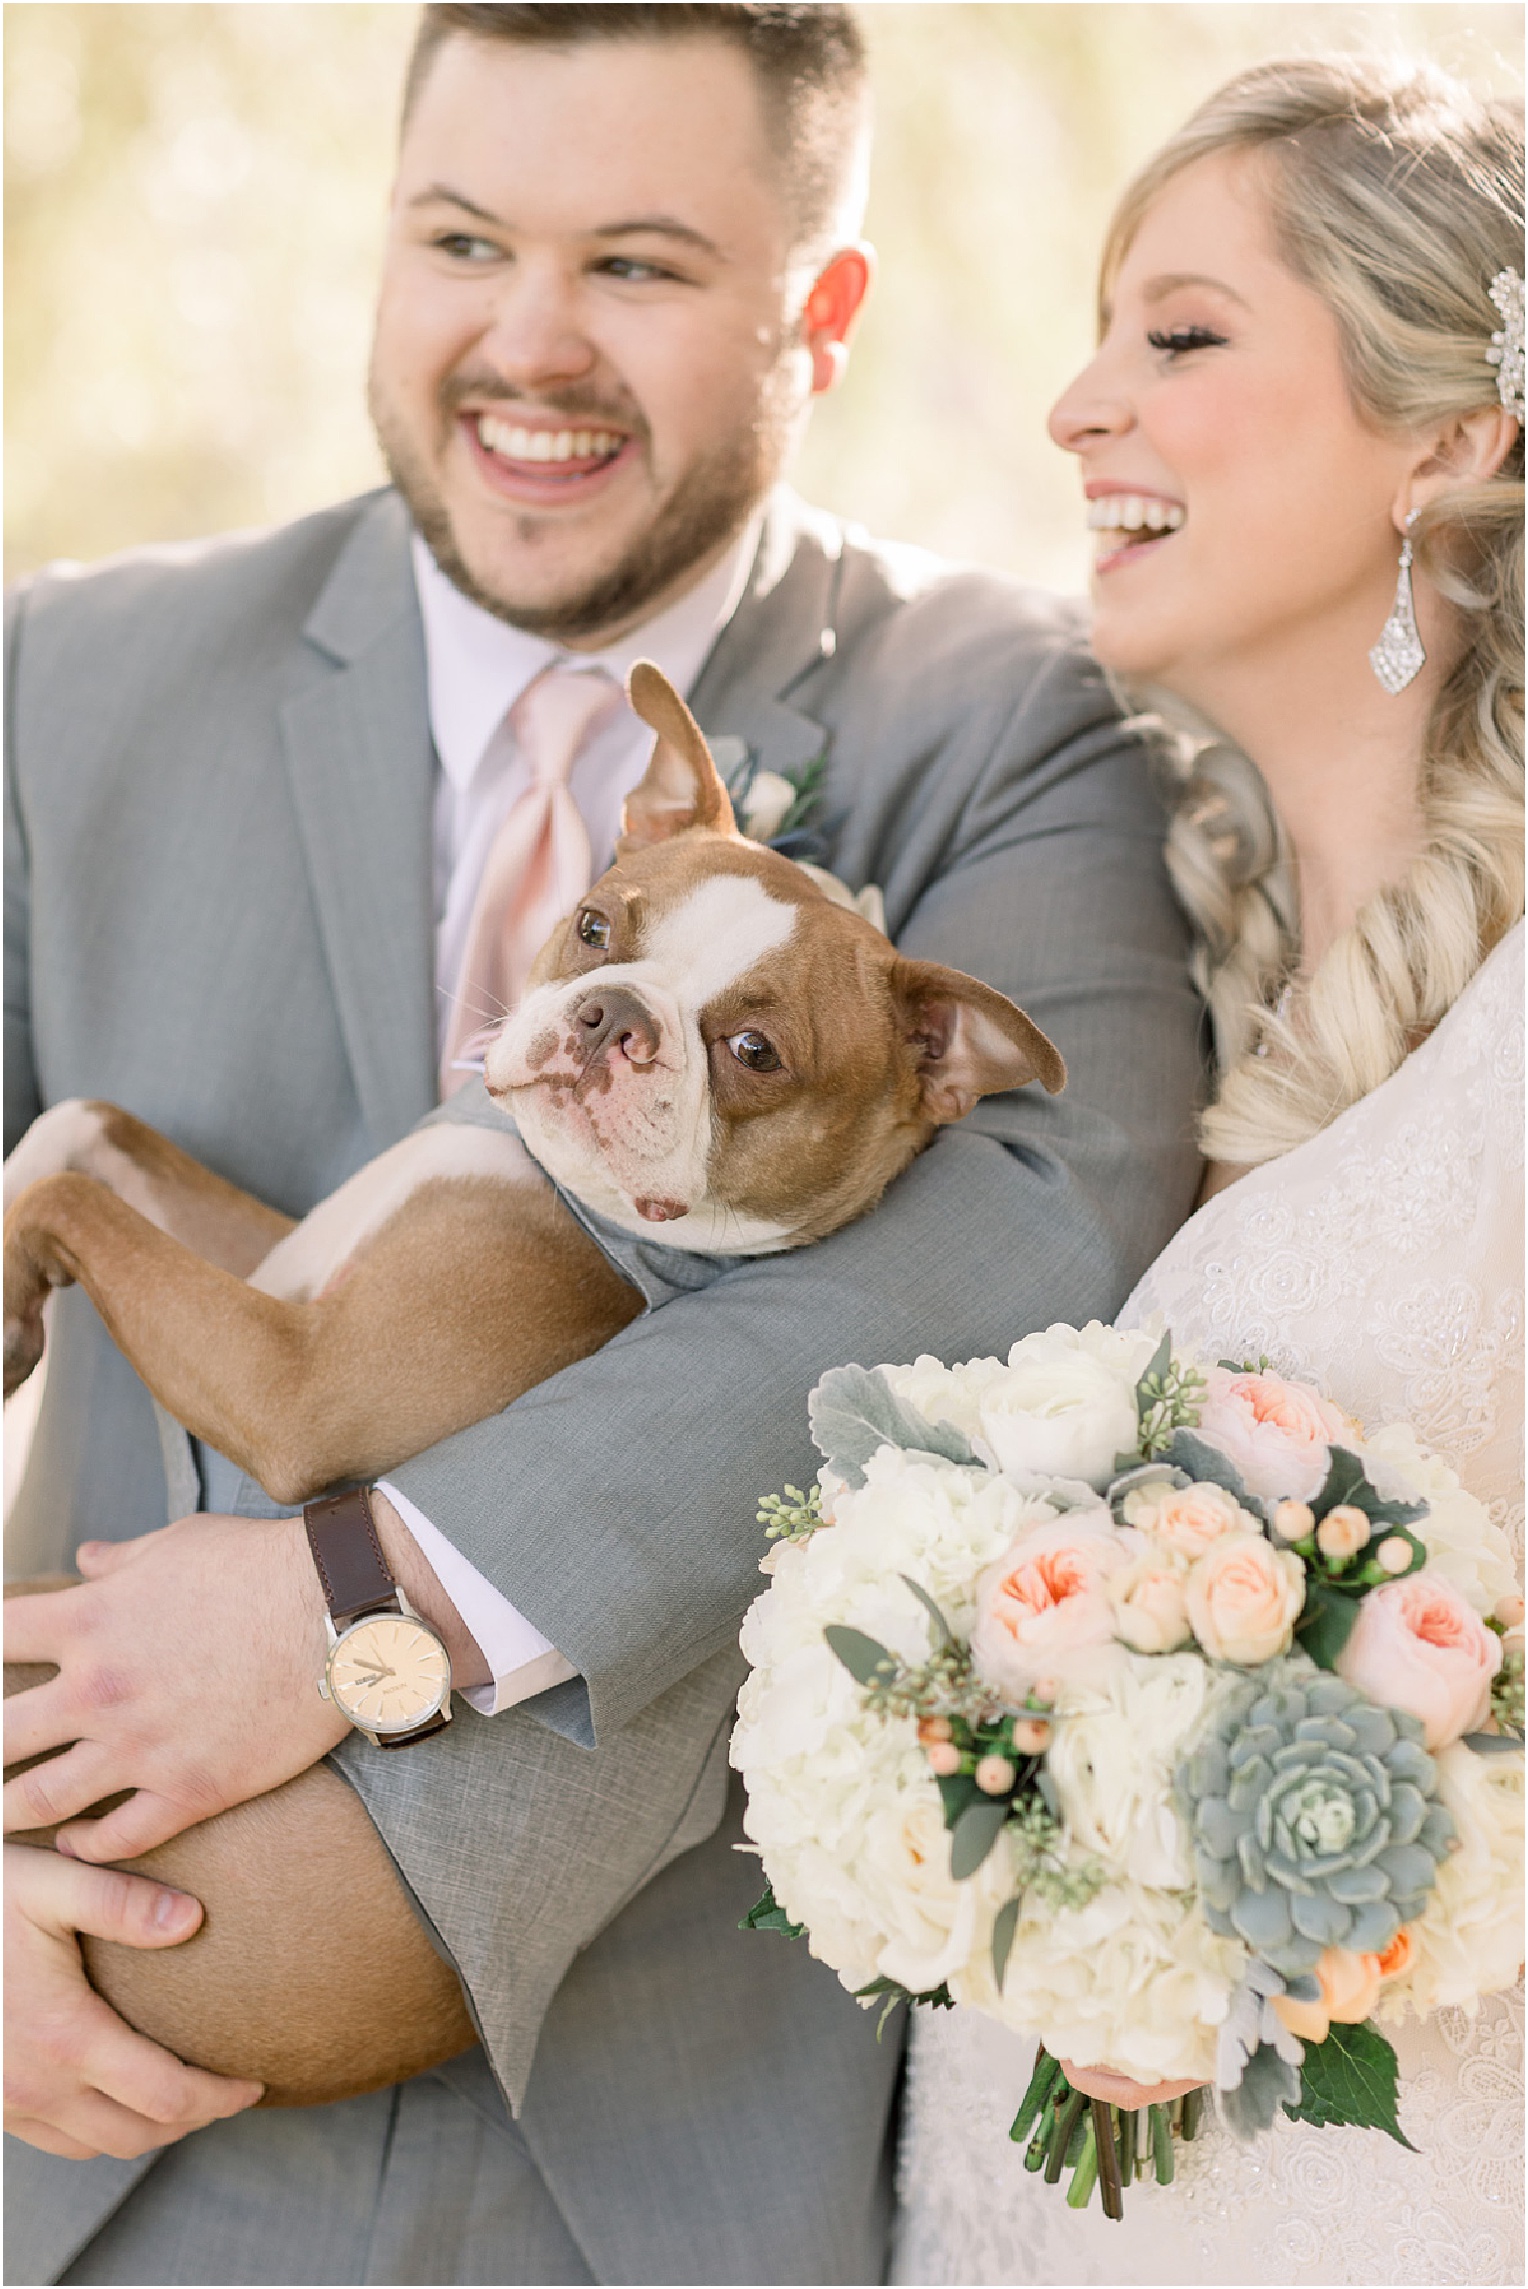 Annabelle + James Hilton El Conquistador Wedding outdoor bride and groom portraits with puppy